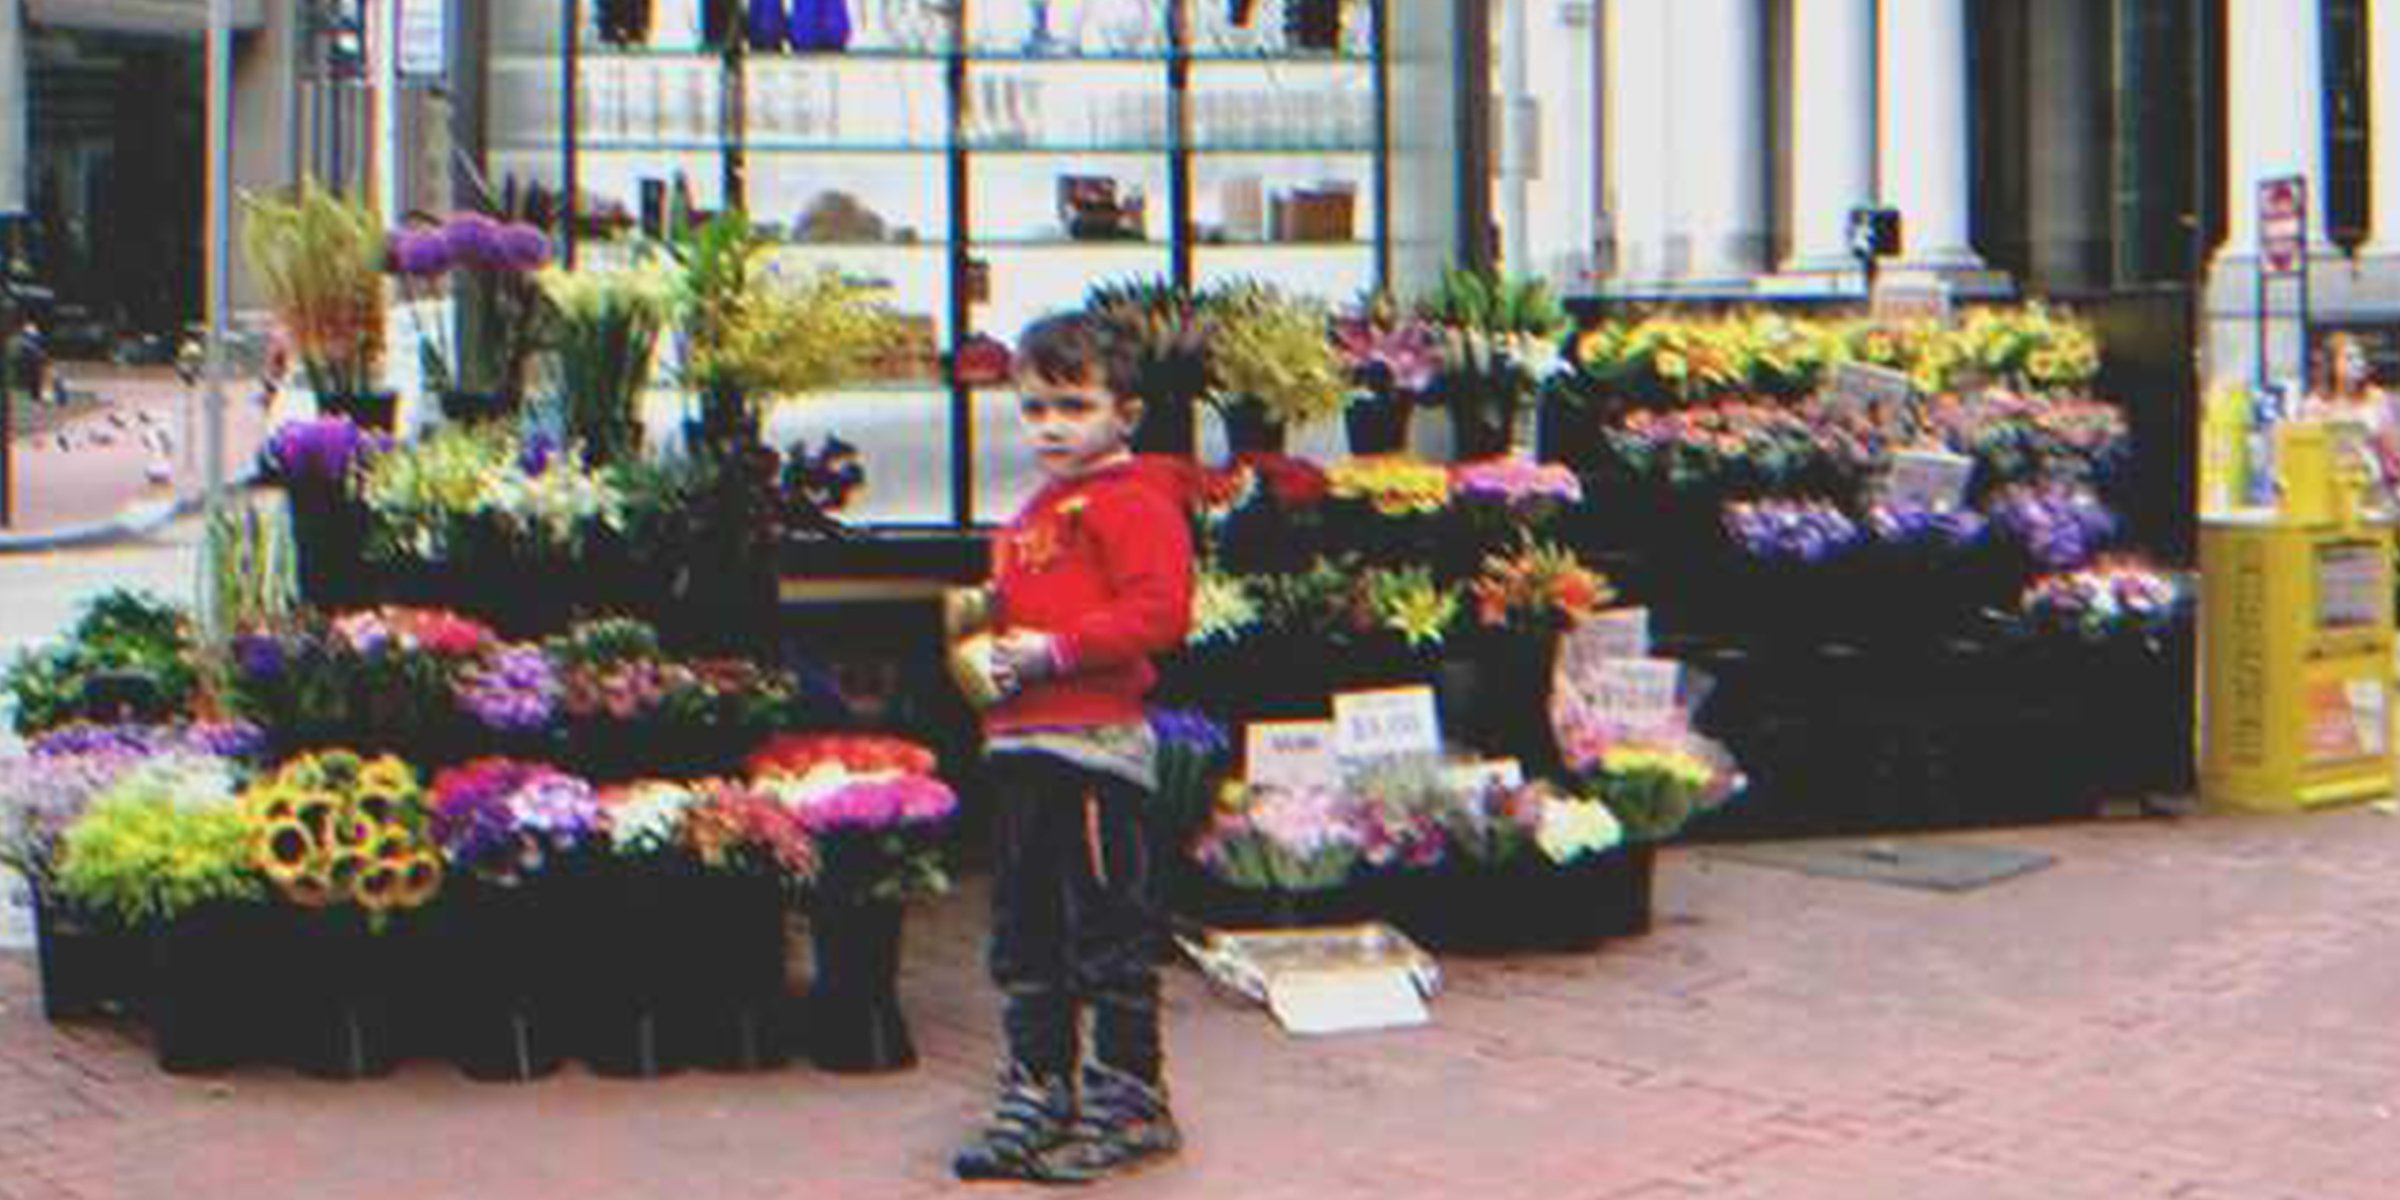 Un garçon chez un fleuriste | Shutterstock Flickr / Ed Schipul